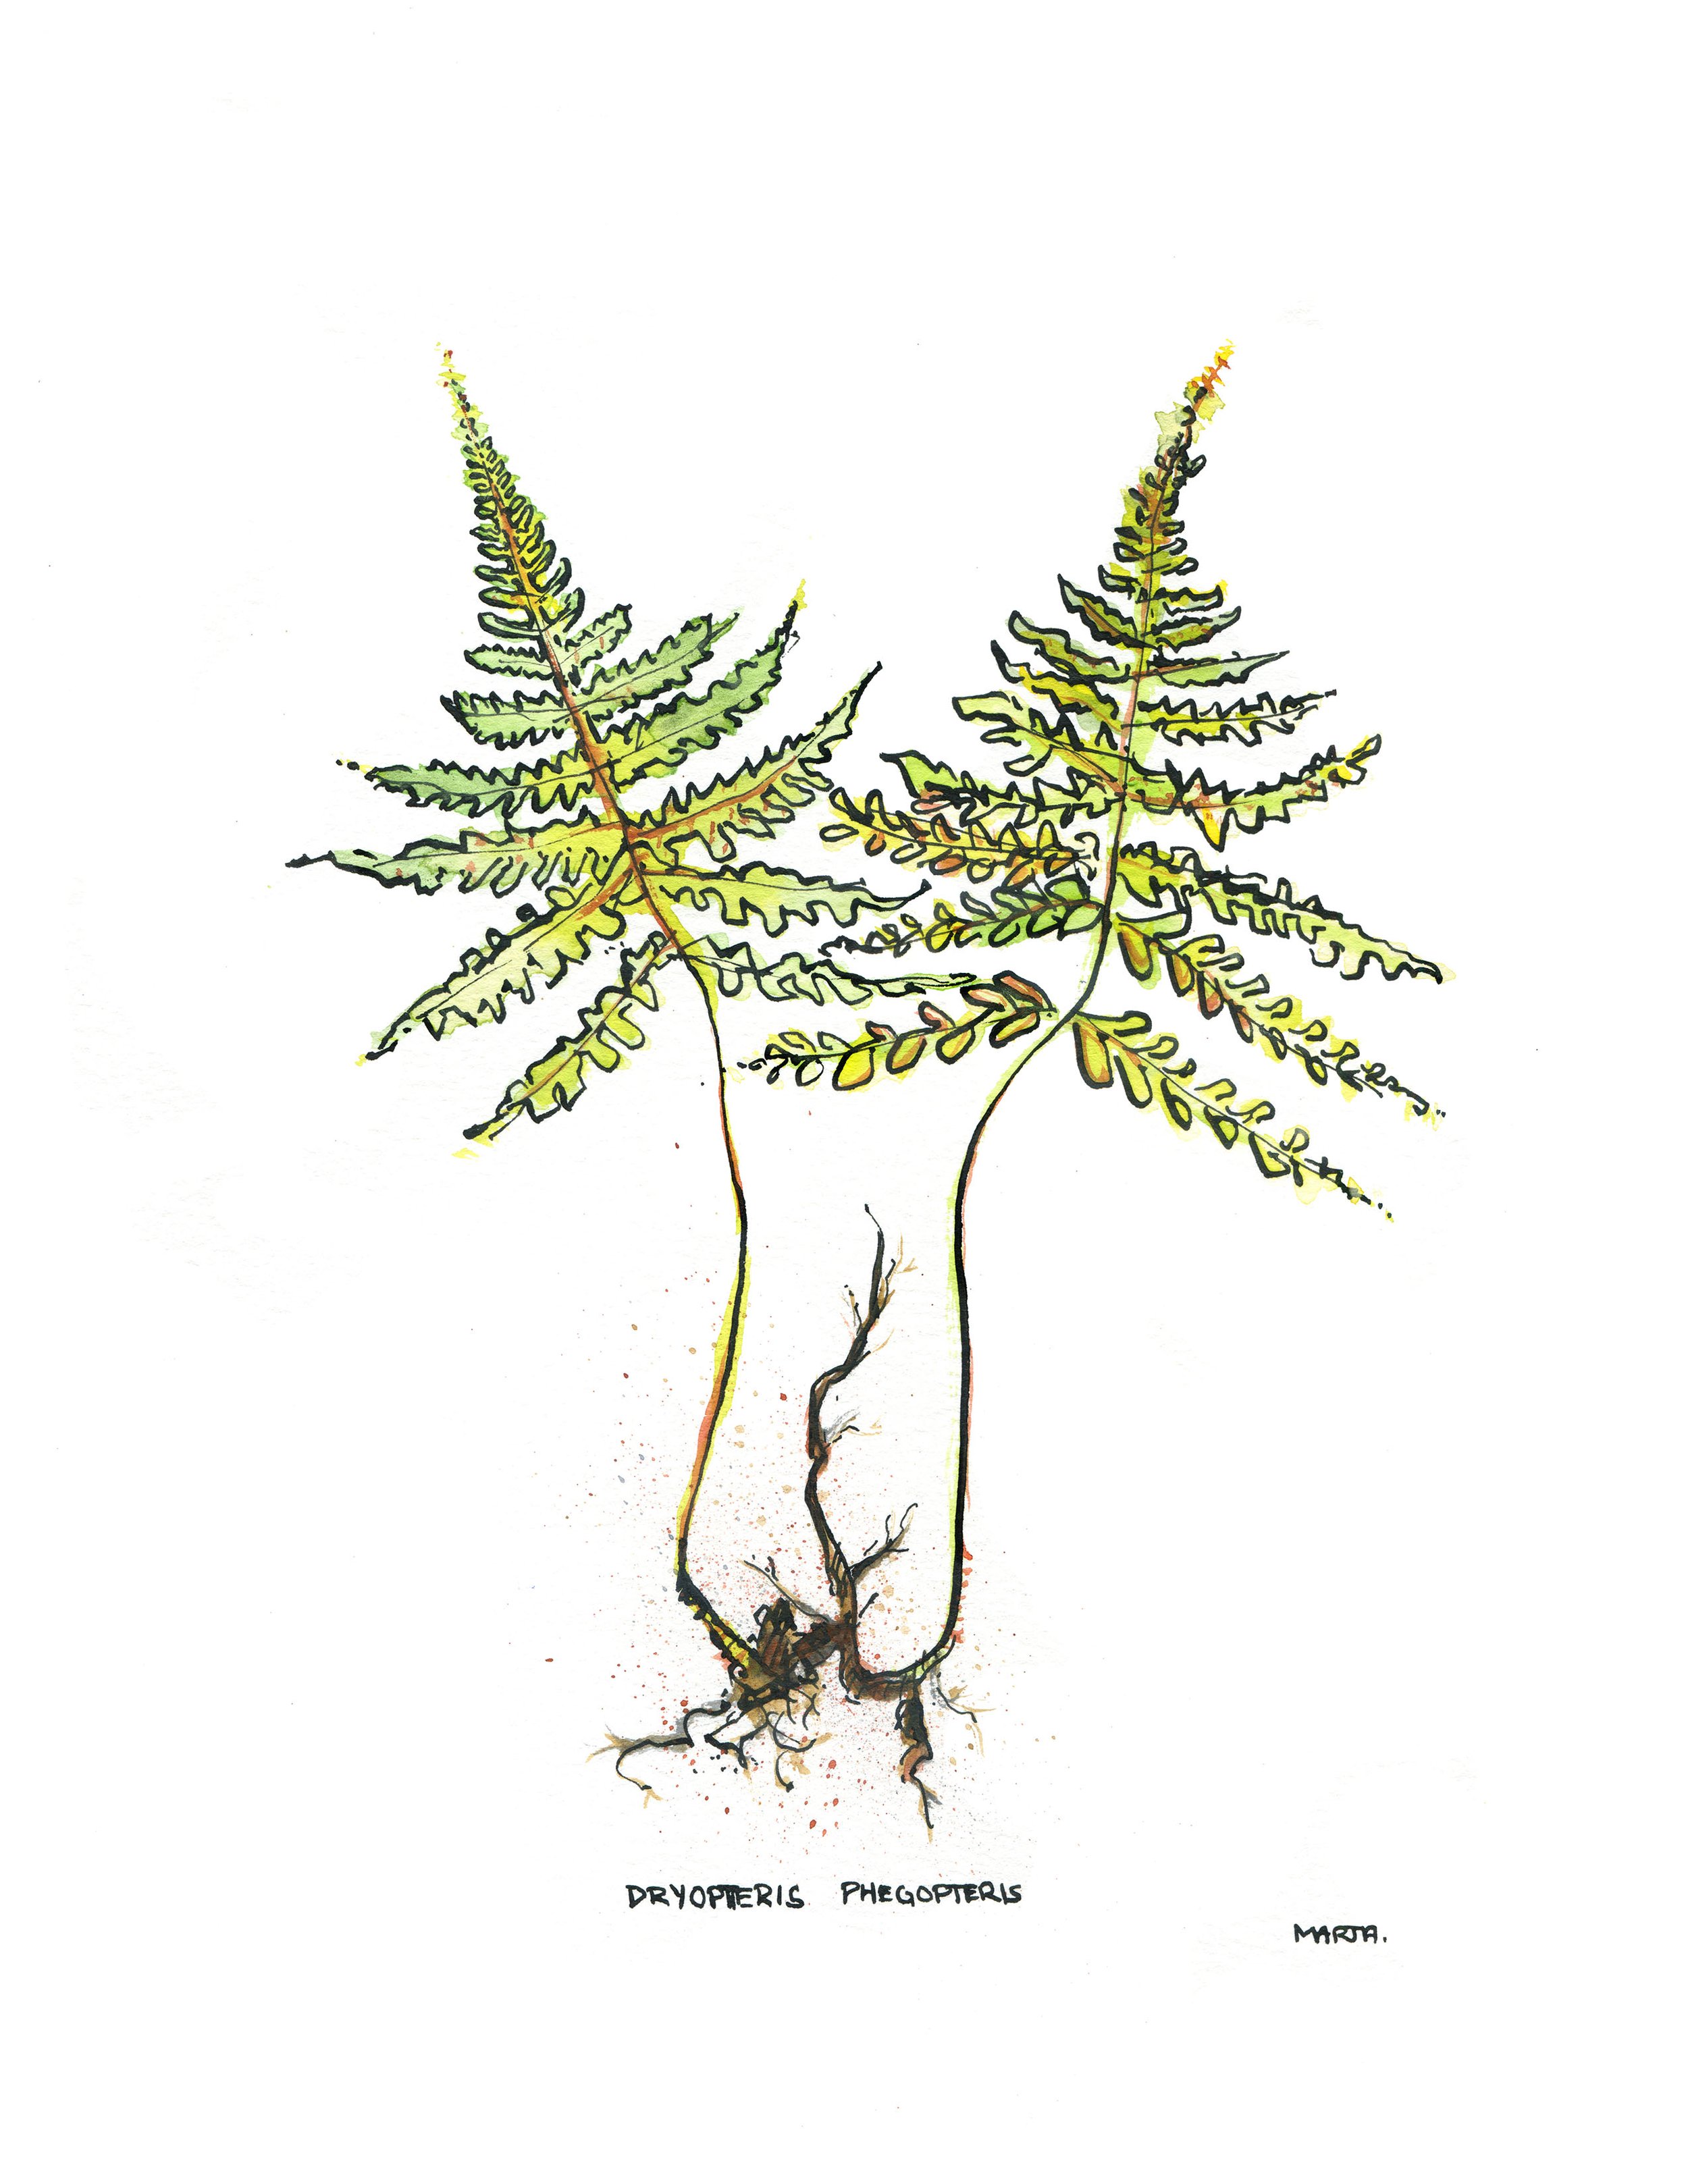 2019 Quebec Botanicals Dryopteris phegopteris.jpg